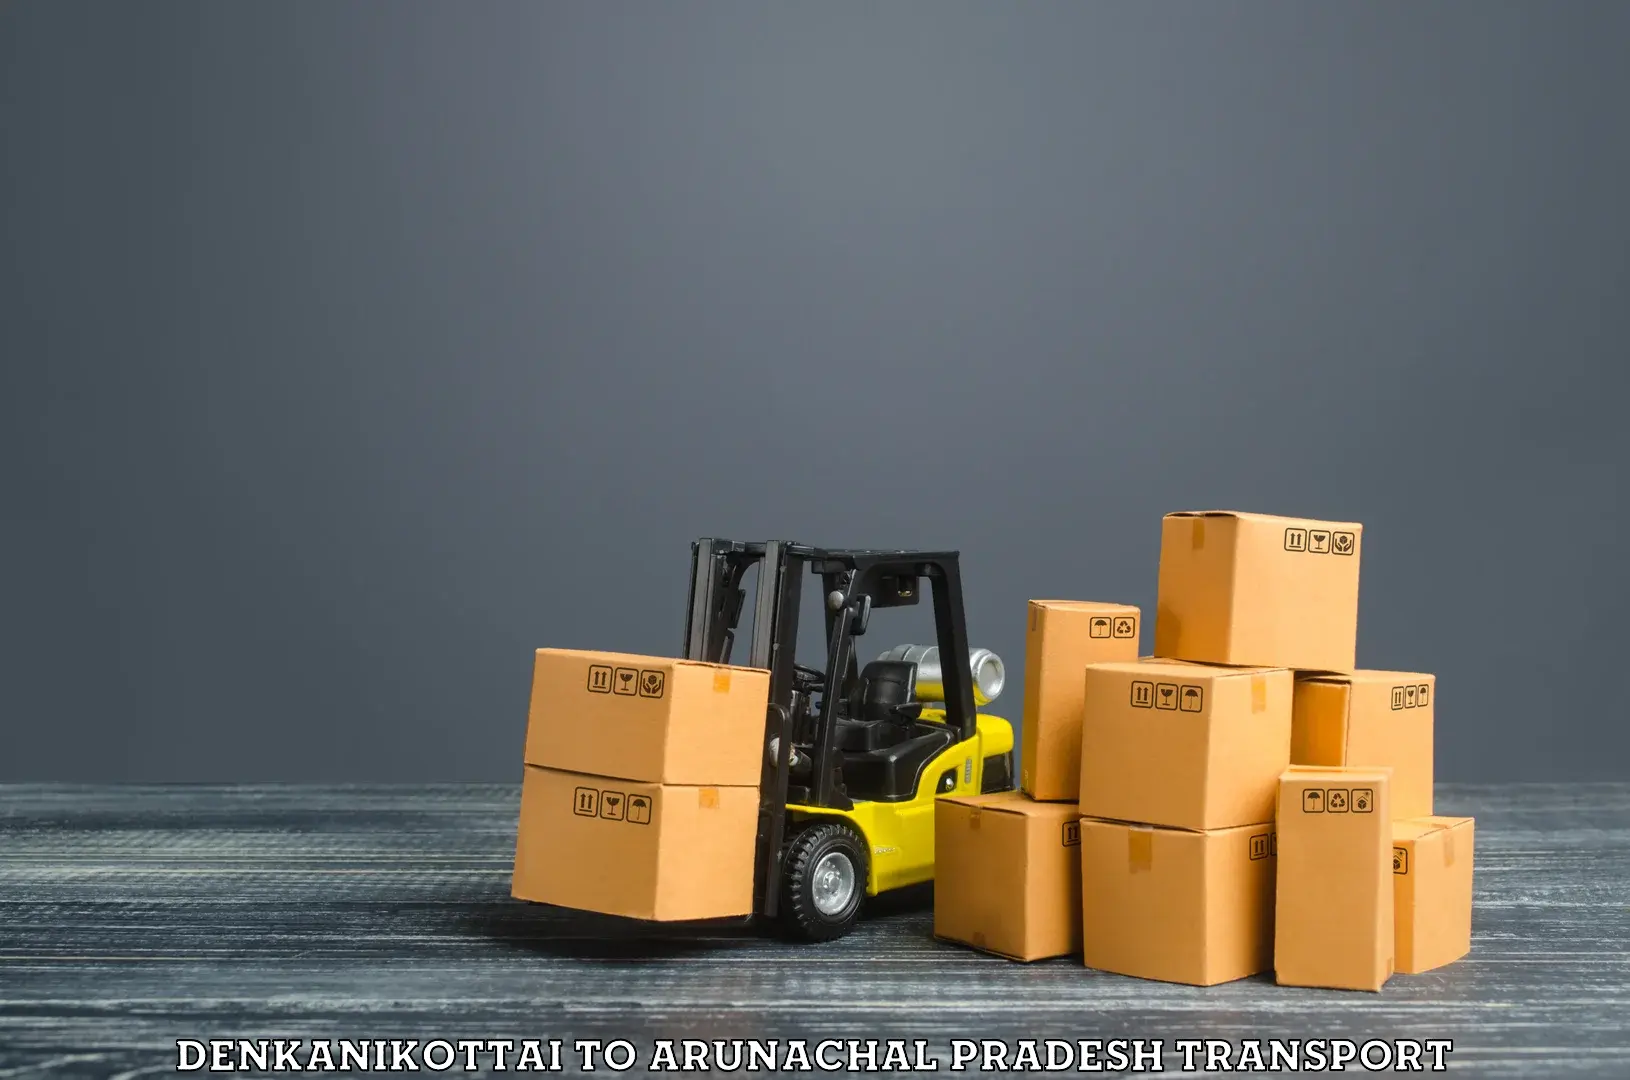 Goods delivery service Denkanikottai to Nirjuli